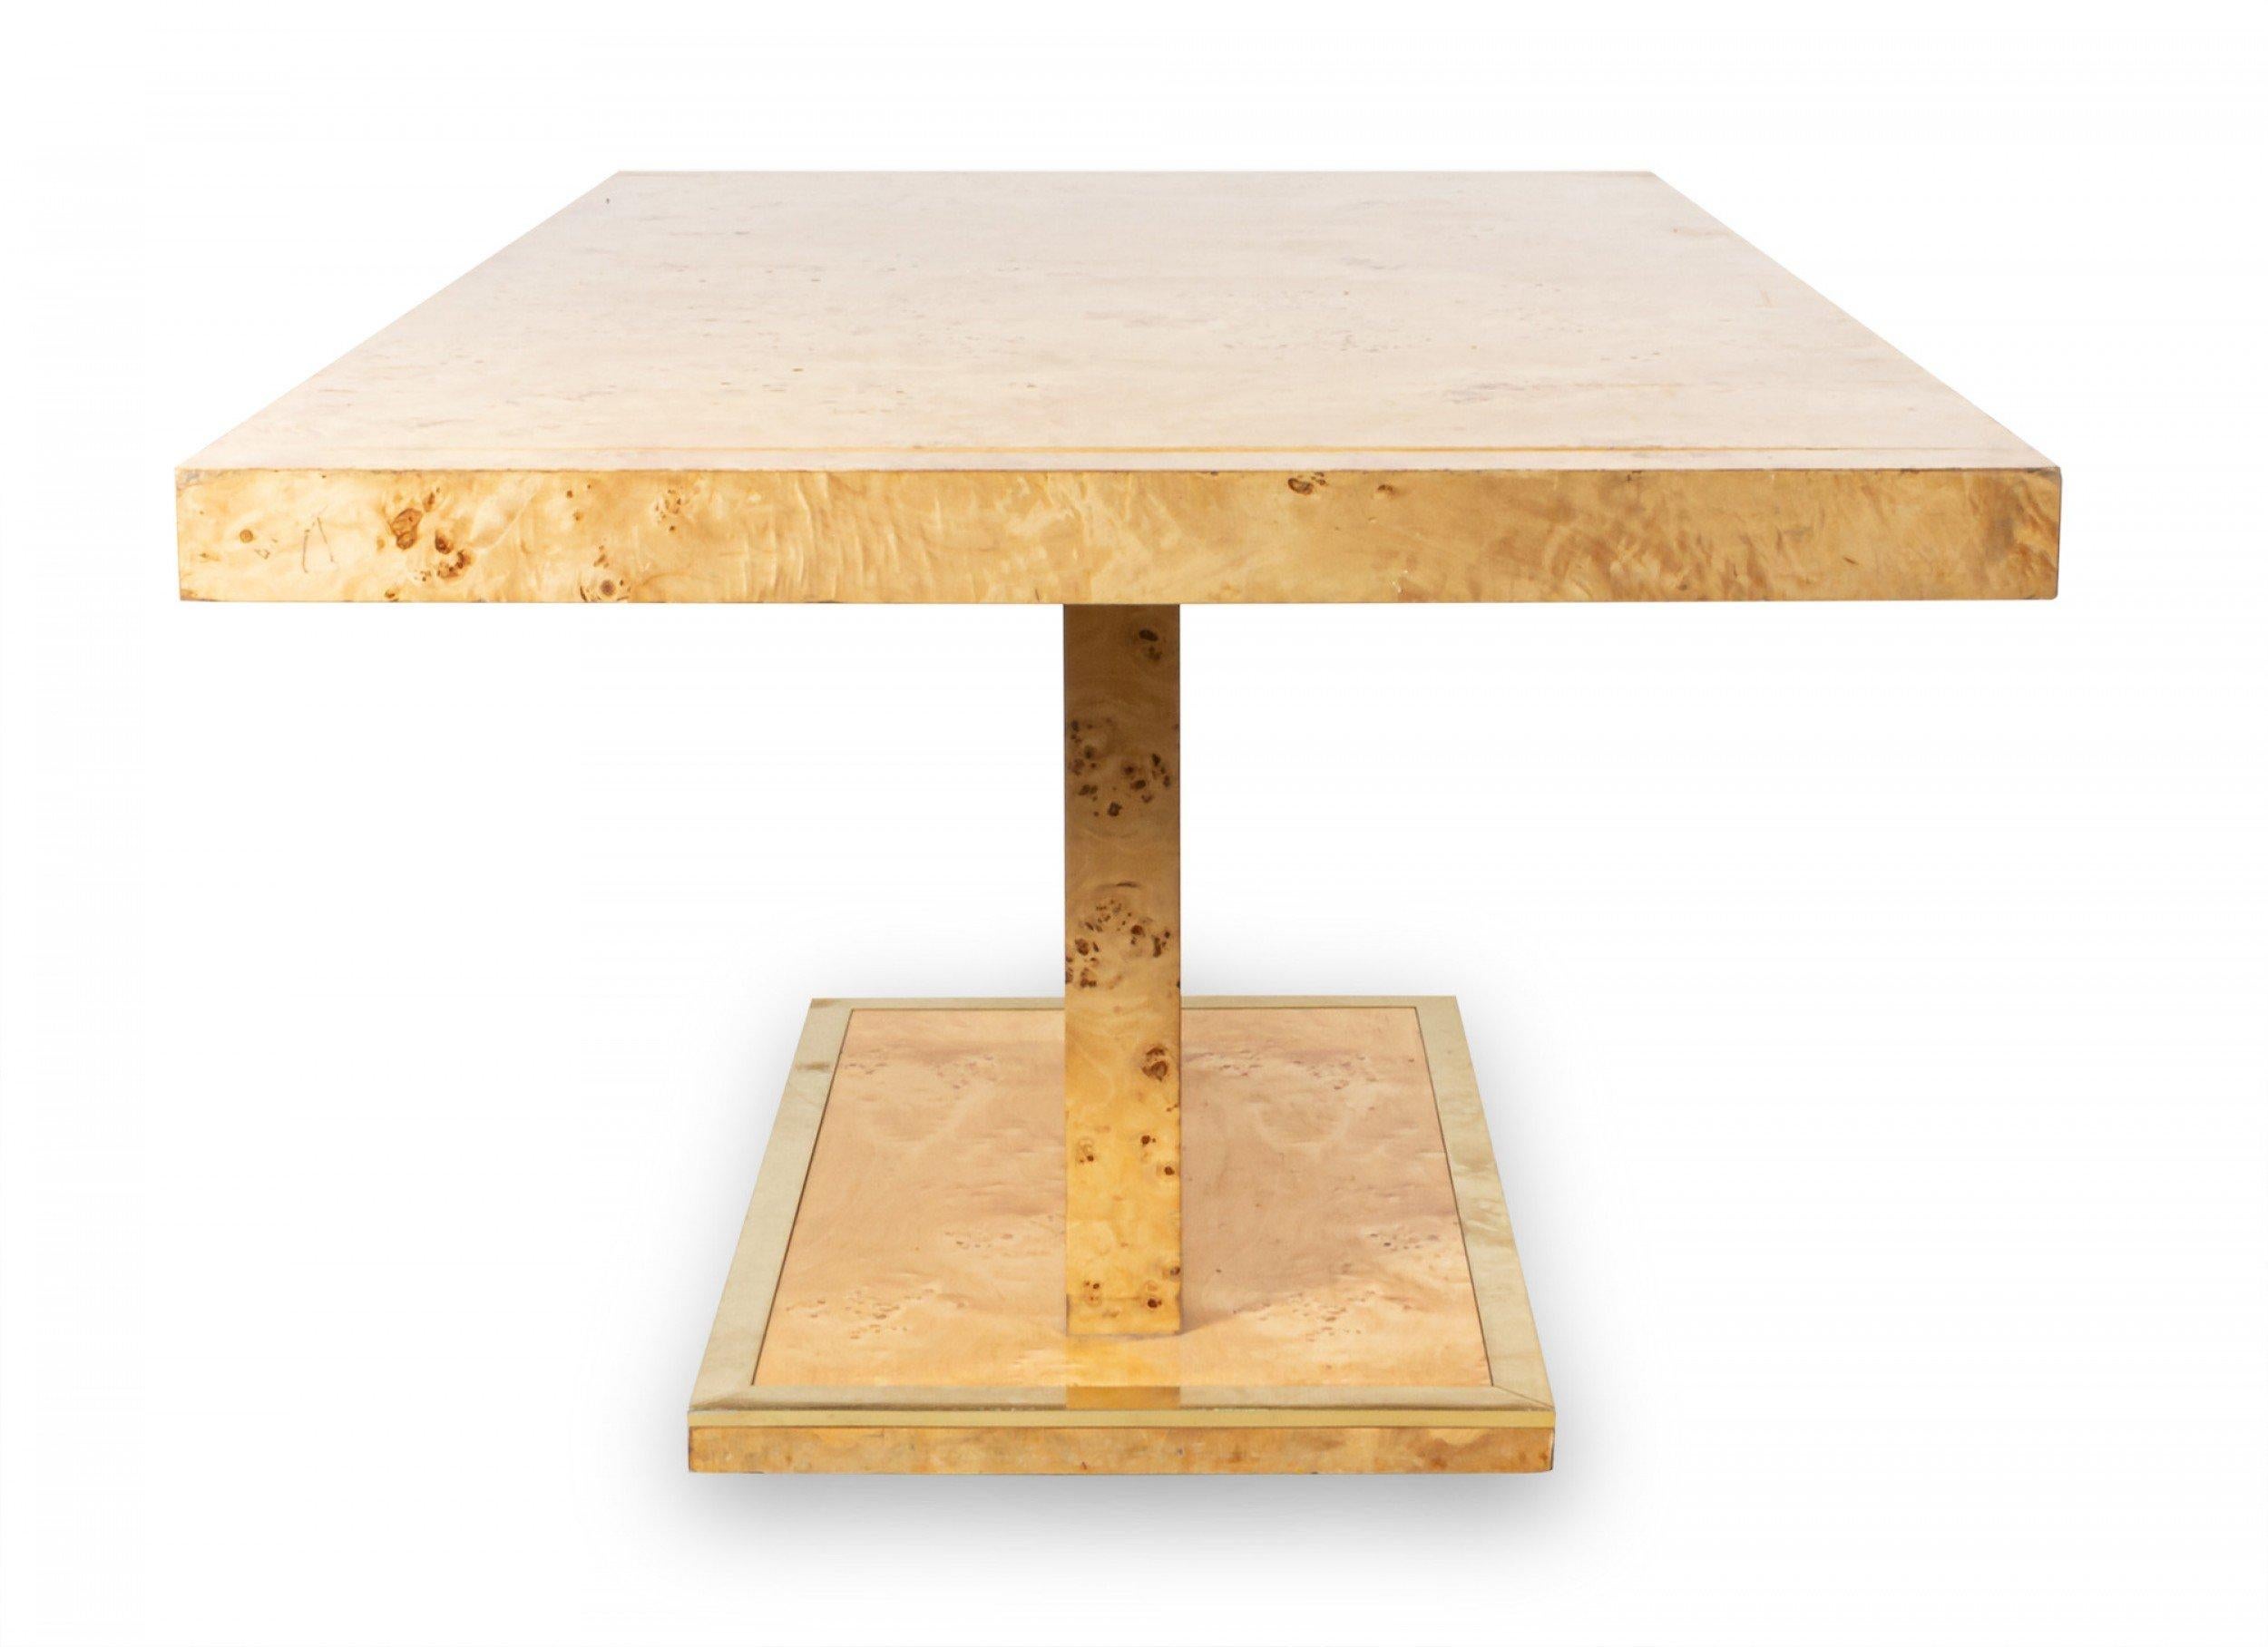 Tavolo da pranzo in legno di radica in stile Milo Baughman, con due foglie allungabili e struttura in metallo sulla base (le foglie misurano 16,5